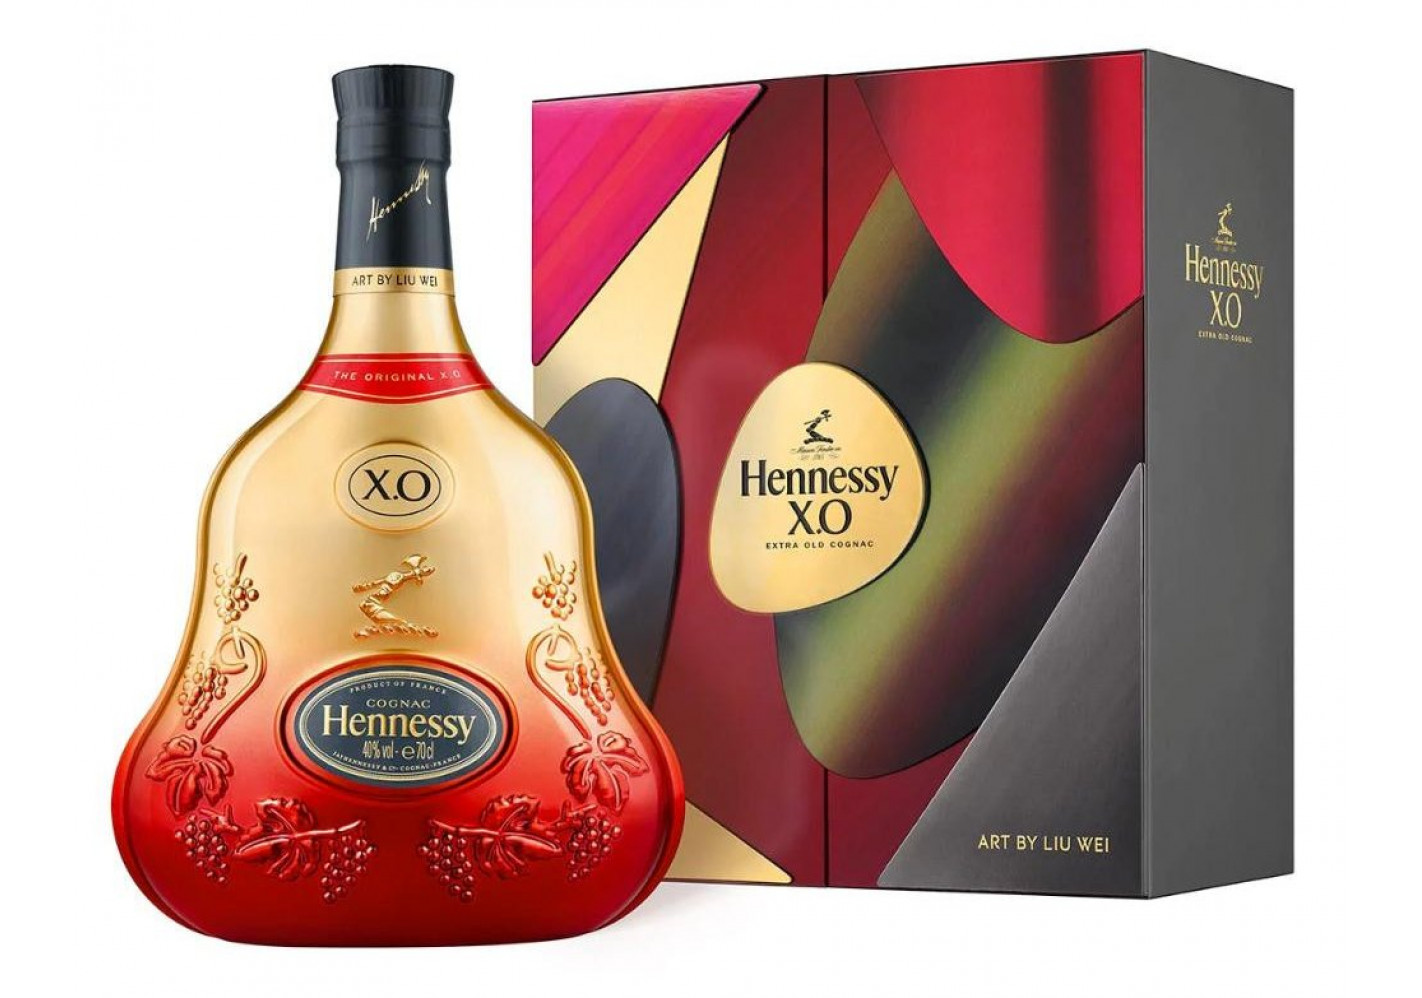 HENNESSY - X.O cognac 700ml